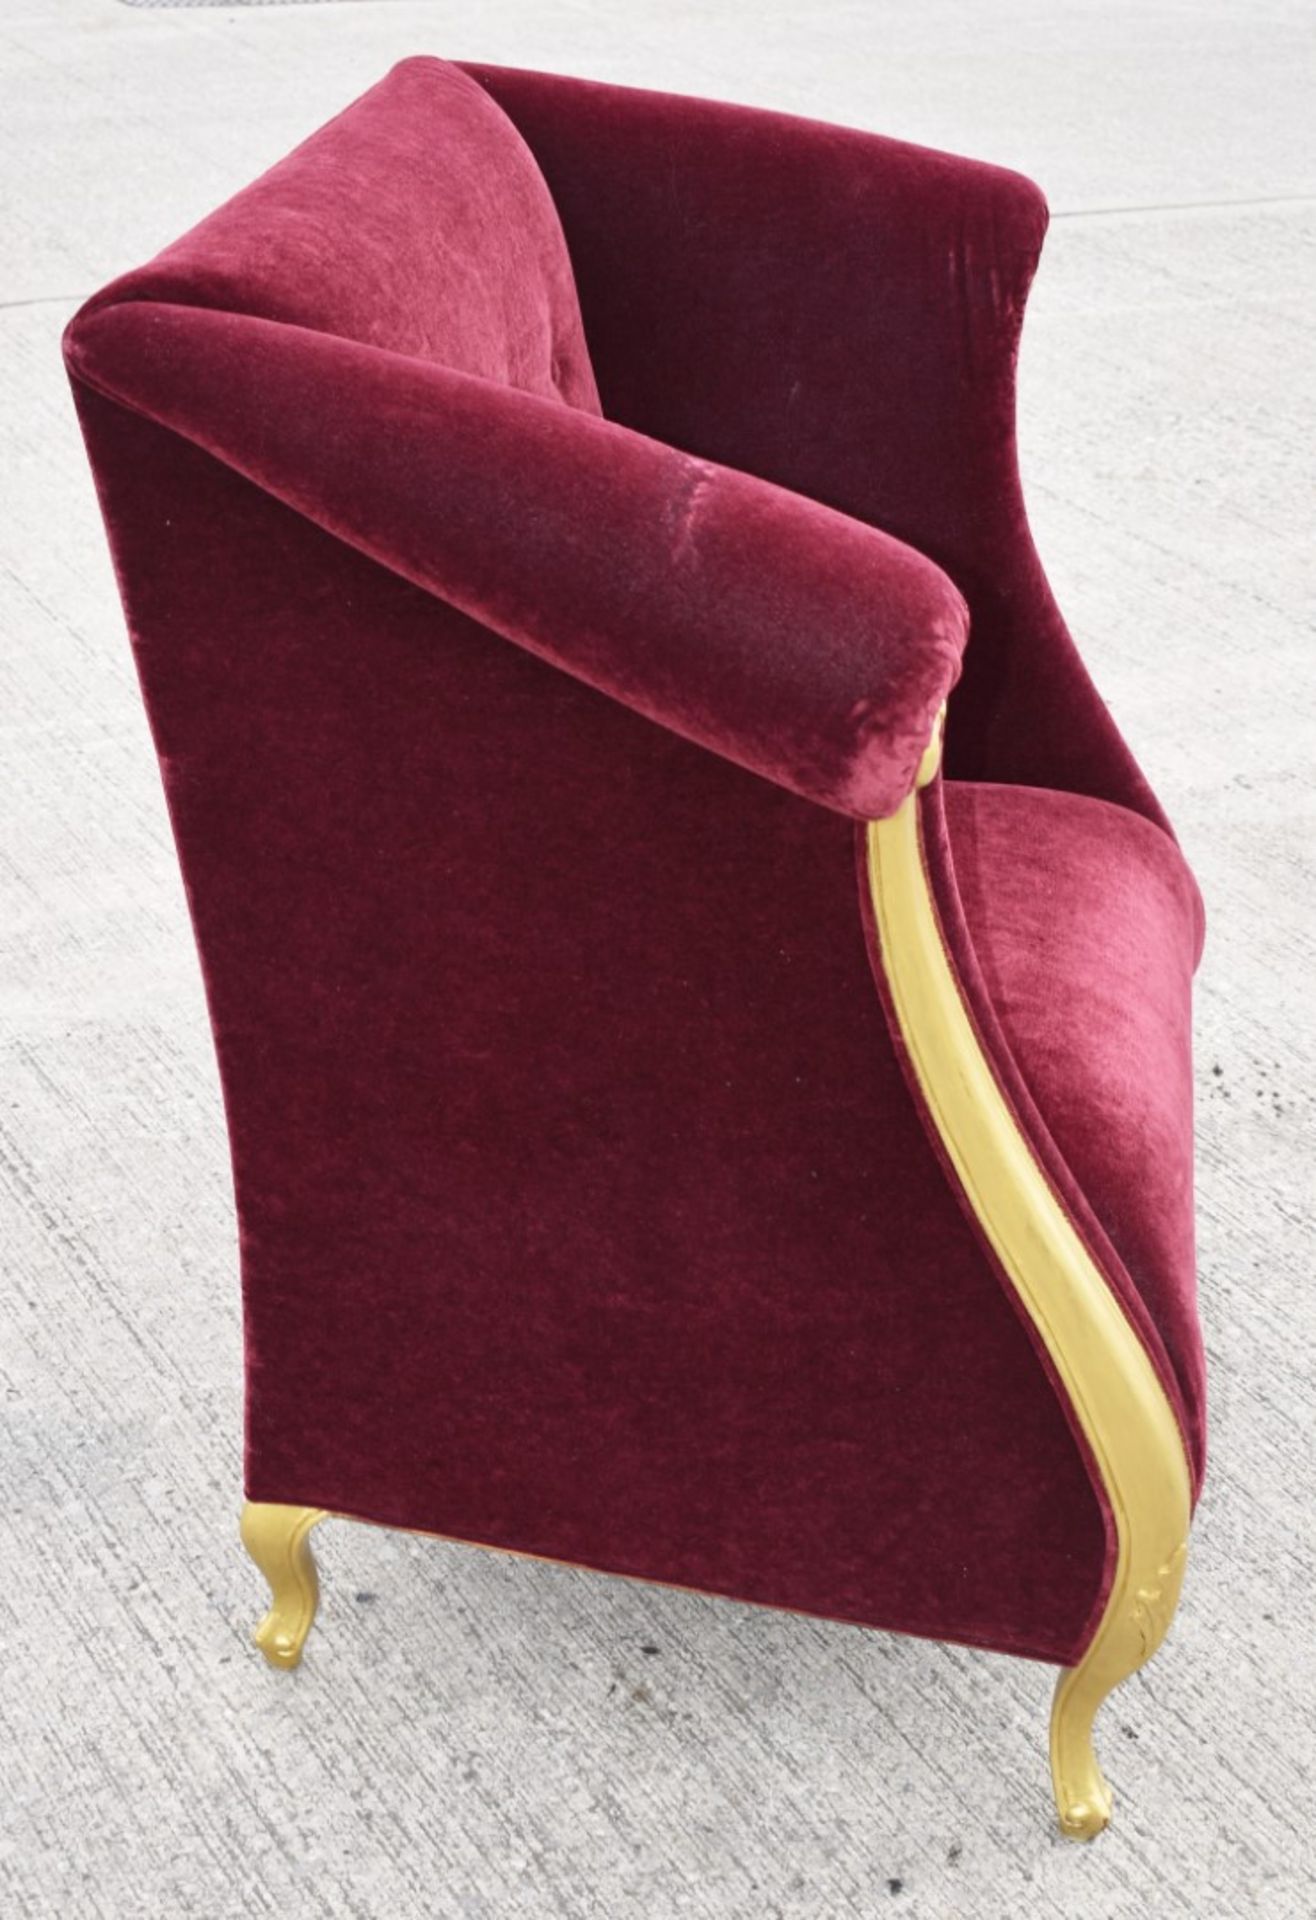 1 x CHRISTOPHER GUY Bespoke Opulent Velvet Upholstered Oversized Armchair - Original Price £4,000 - Image 2 of 9